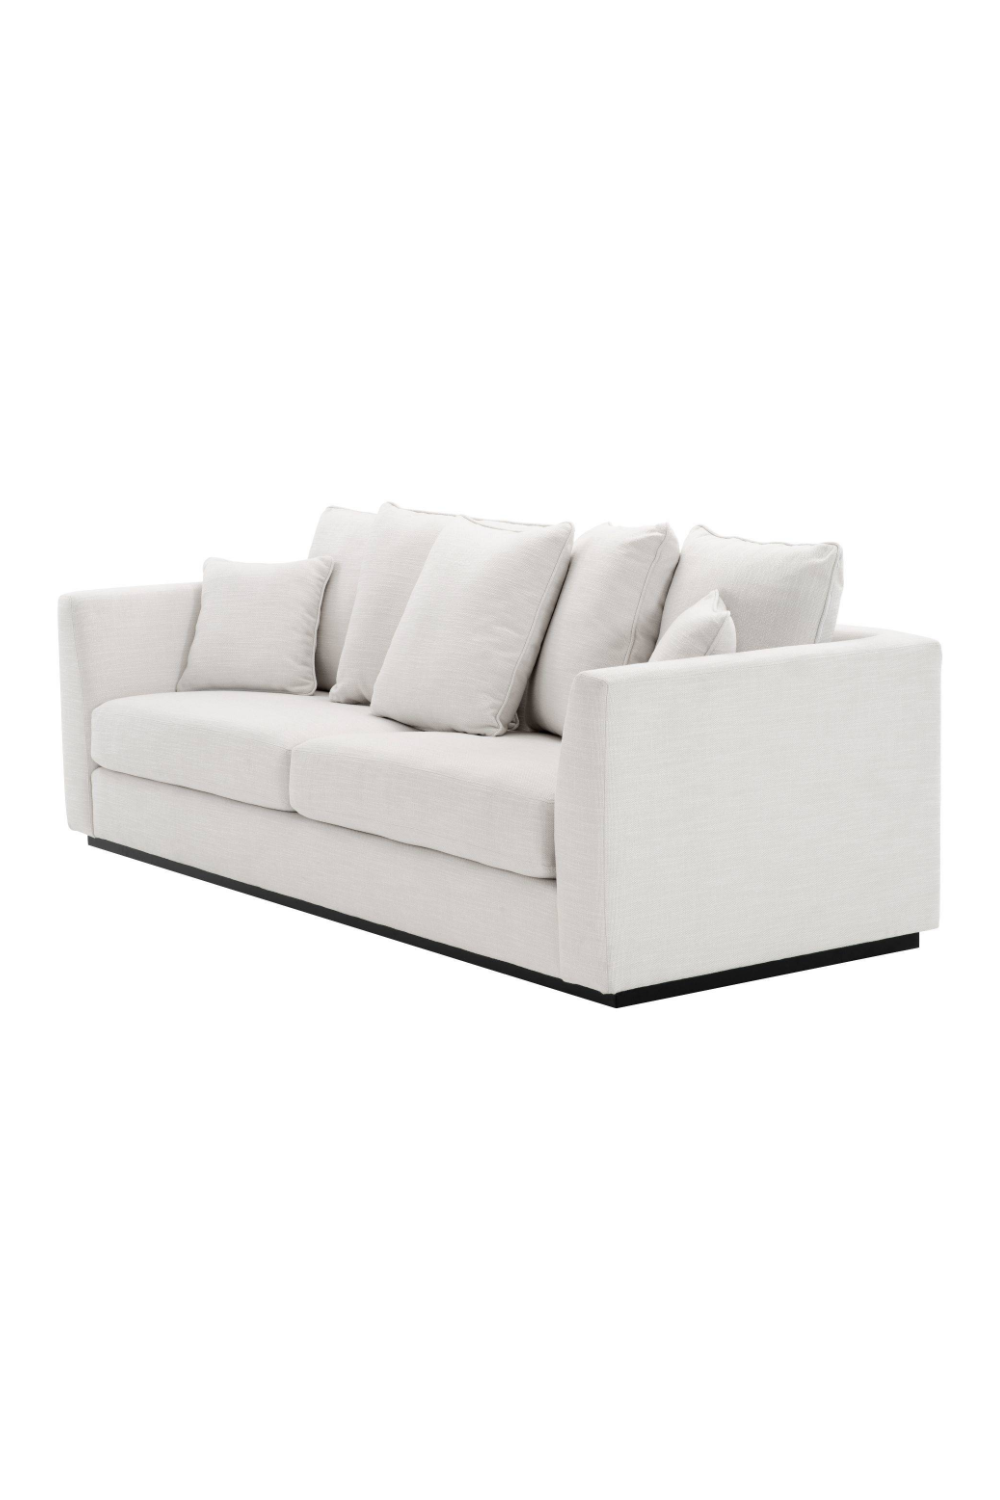 Modern White Sofa | Eichholtz Taylor | Oroa.com